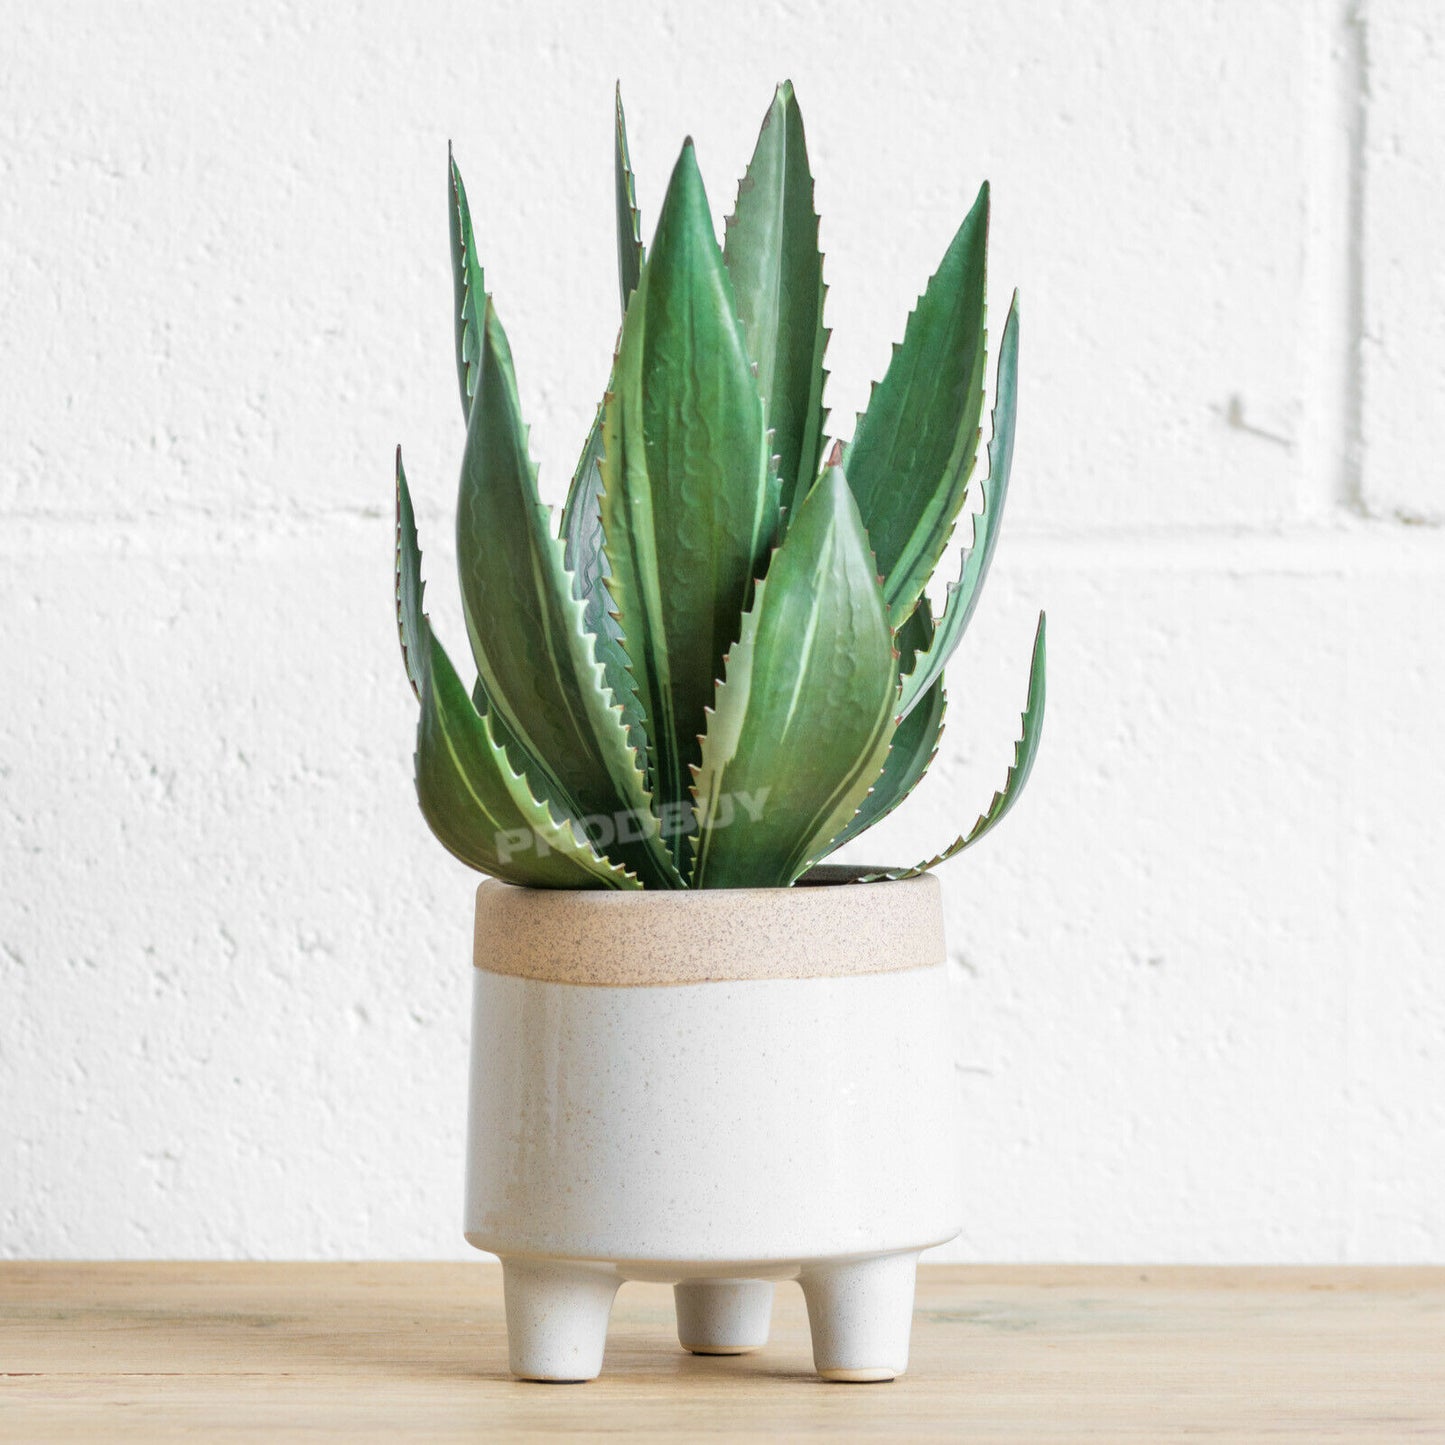 Artificial Aloe Vera House Plant In Ceramic Pot